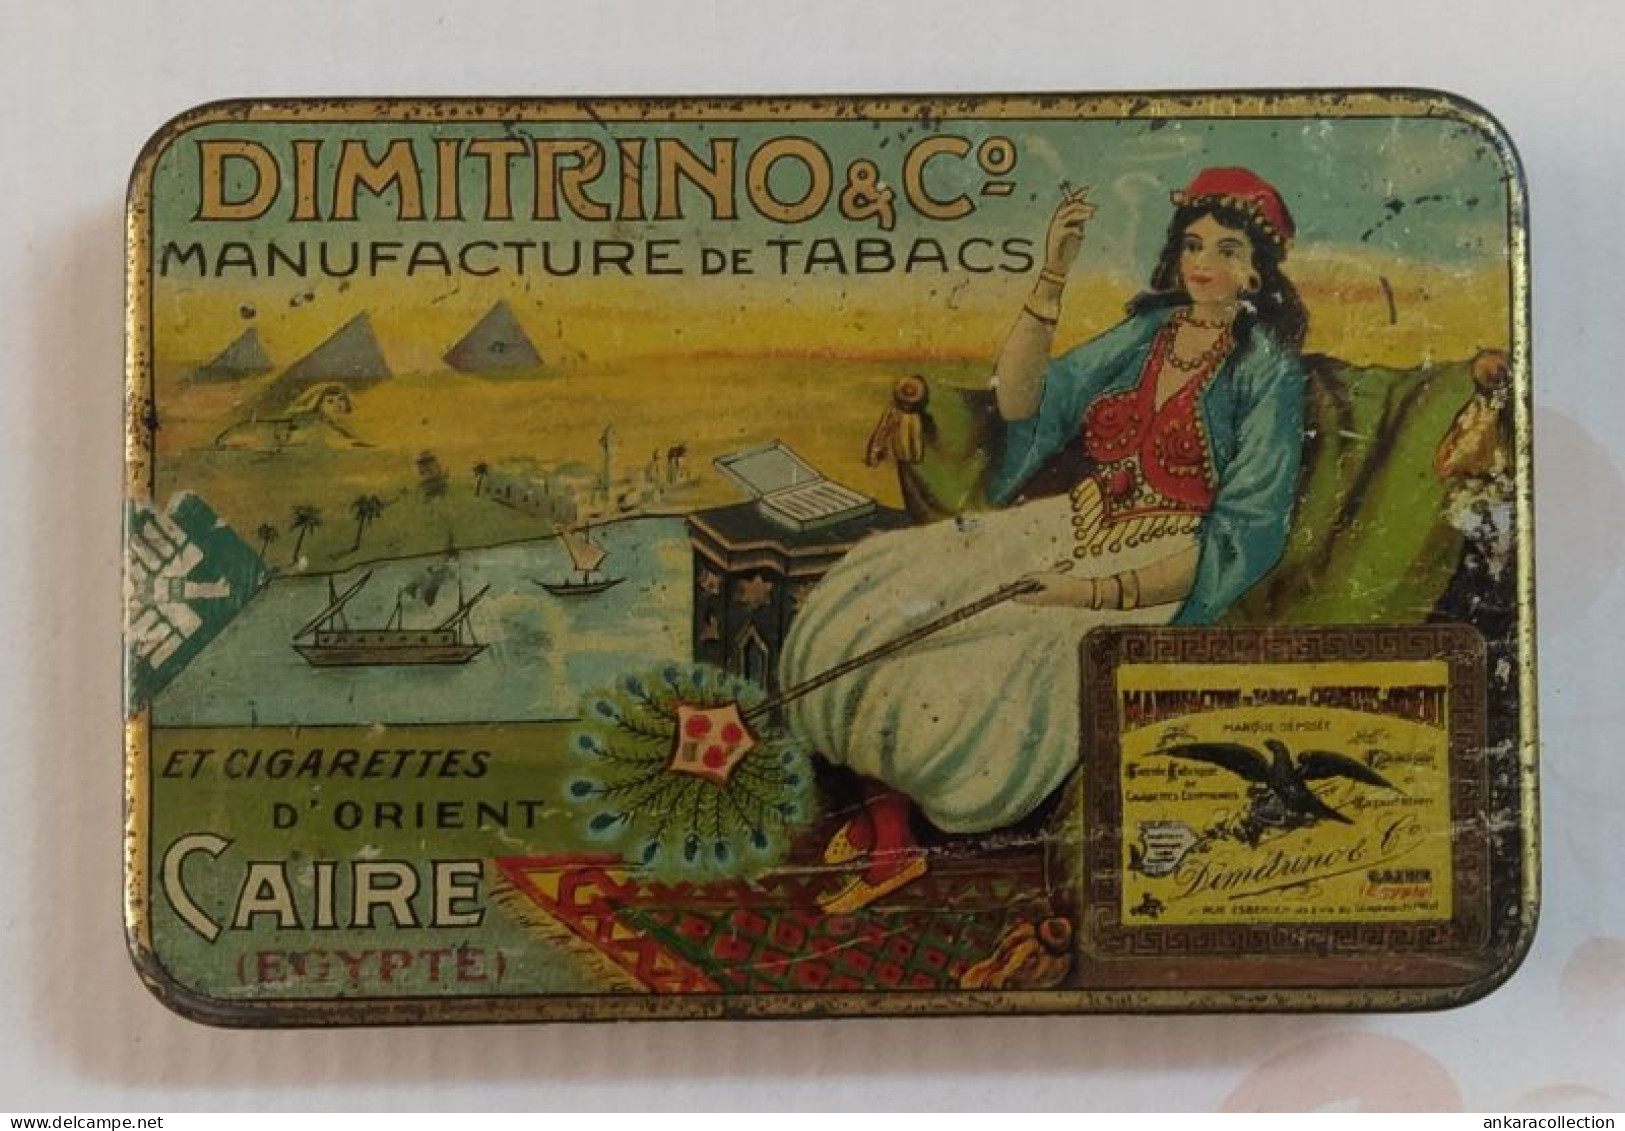 AC - DIMITRINO Co MANUFACTURE DE TABACS CAIRE EGYPTE CIGARETTE - TOBACCO EMPTY VINTAGE TIN BOX - Contenitori Di Tabacco (vuoti)